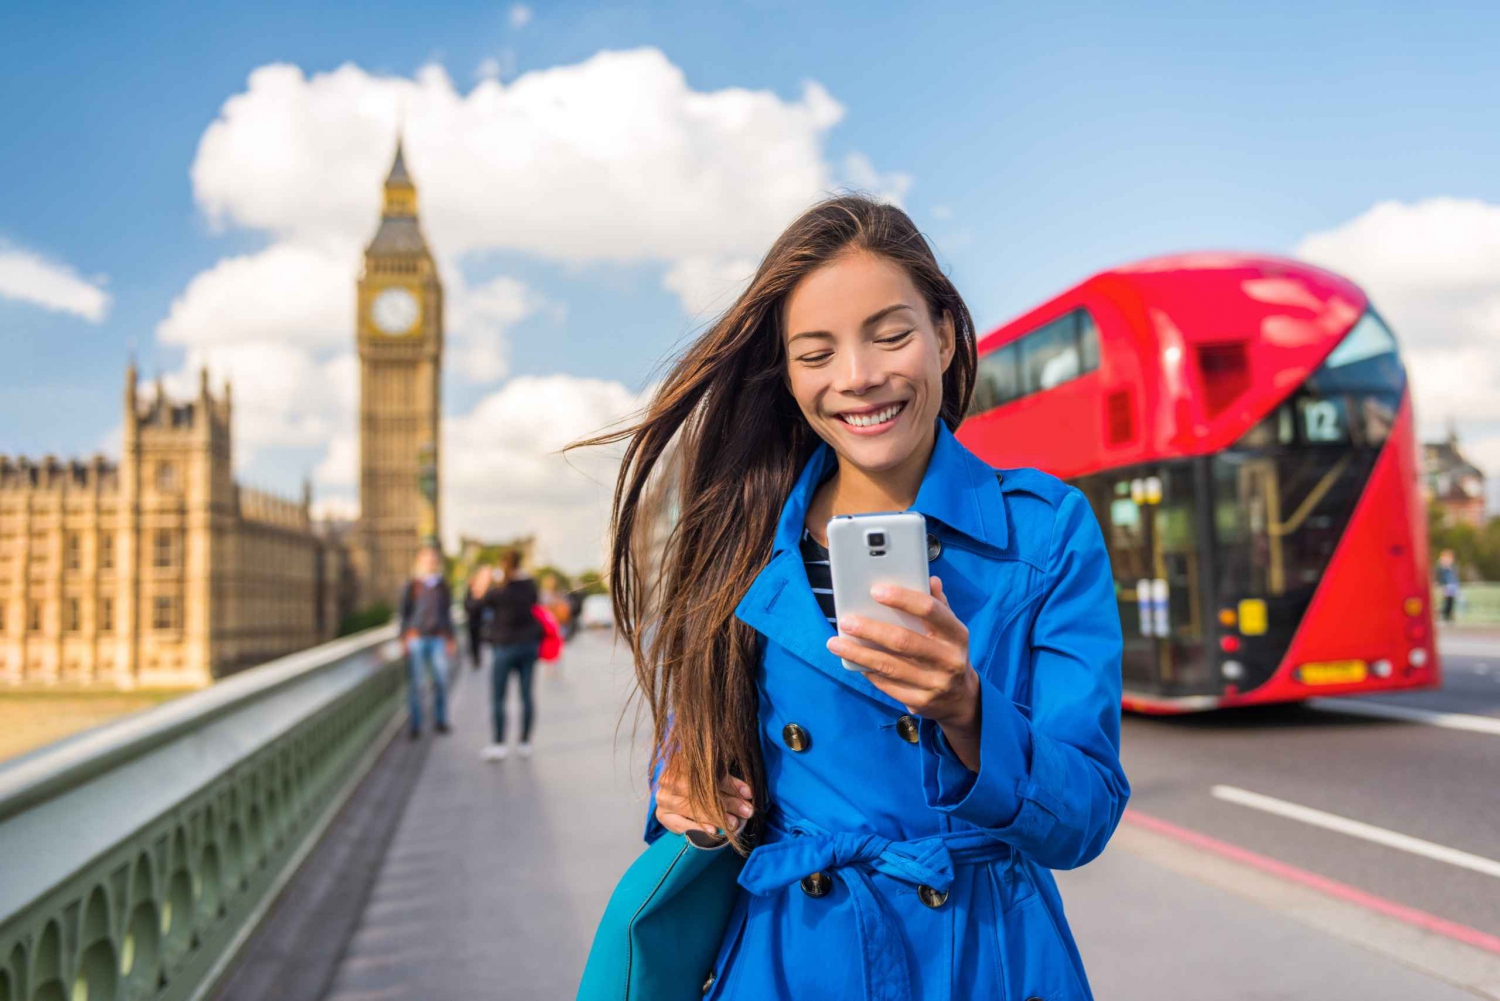 Londres: Internet ilimitada no Reino Unido com dados móveis eSIM